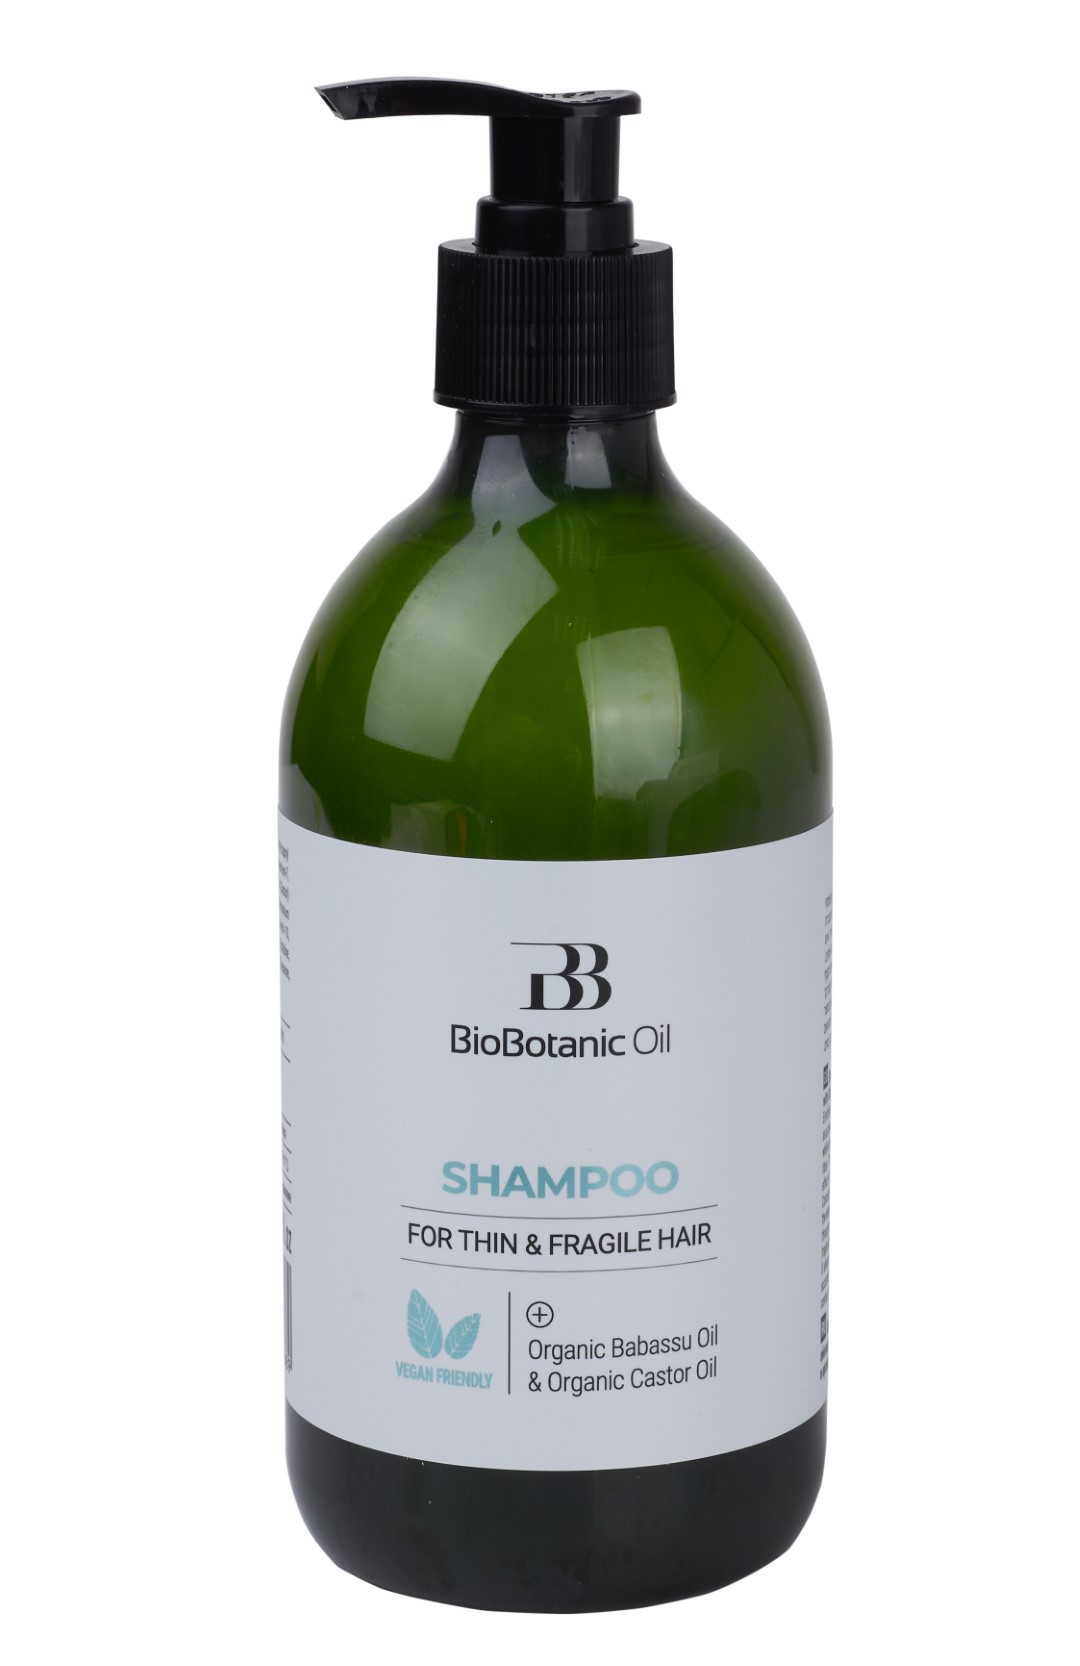 Shampoo for thin and fragile hair